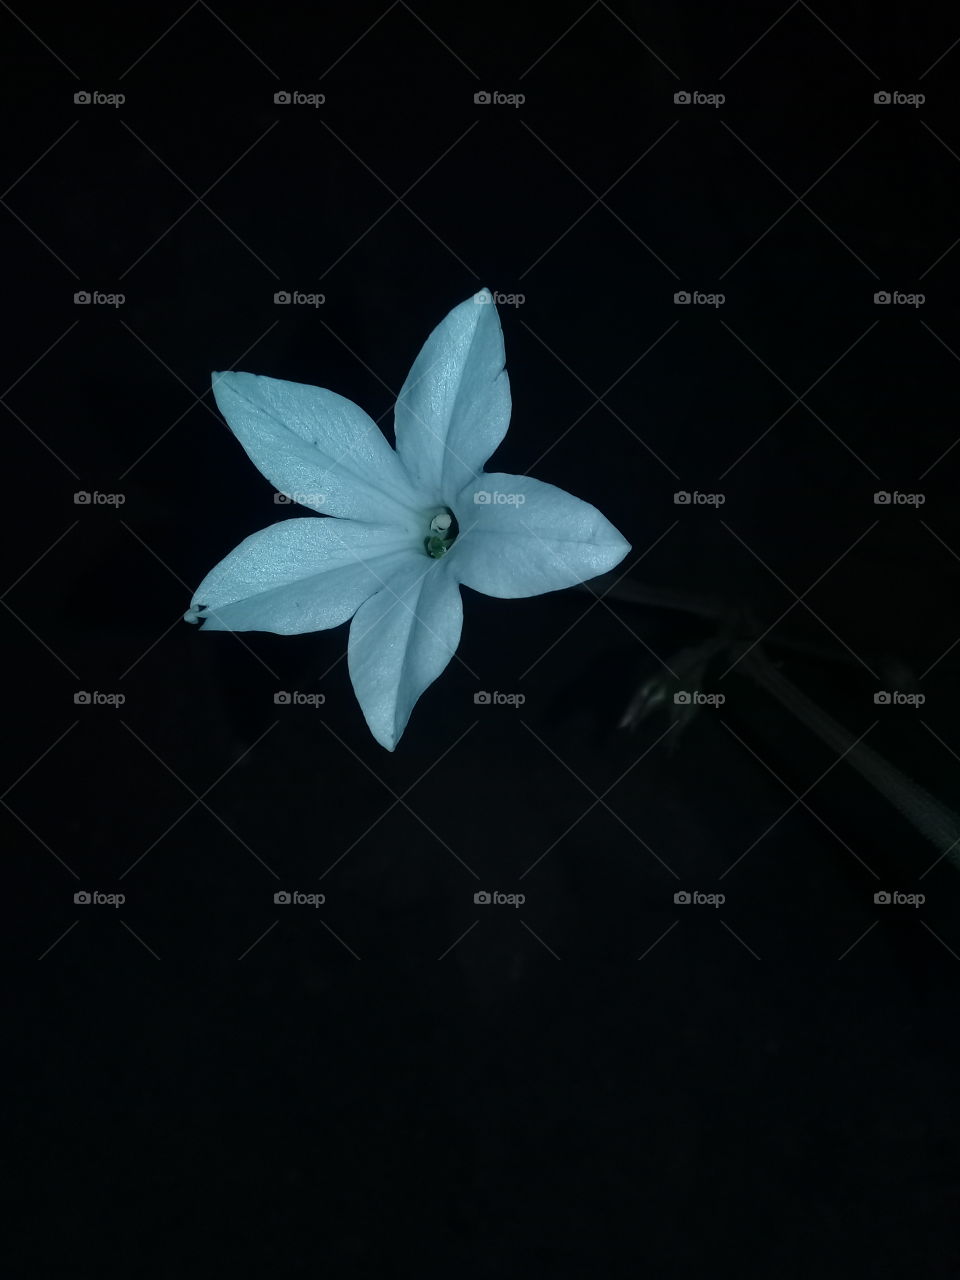 imagen de una flor silvestre abierta al ras del suelo fotografiada en horario nocturno.